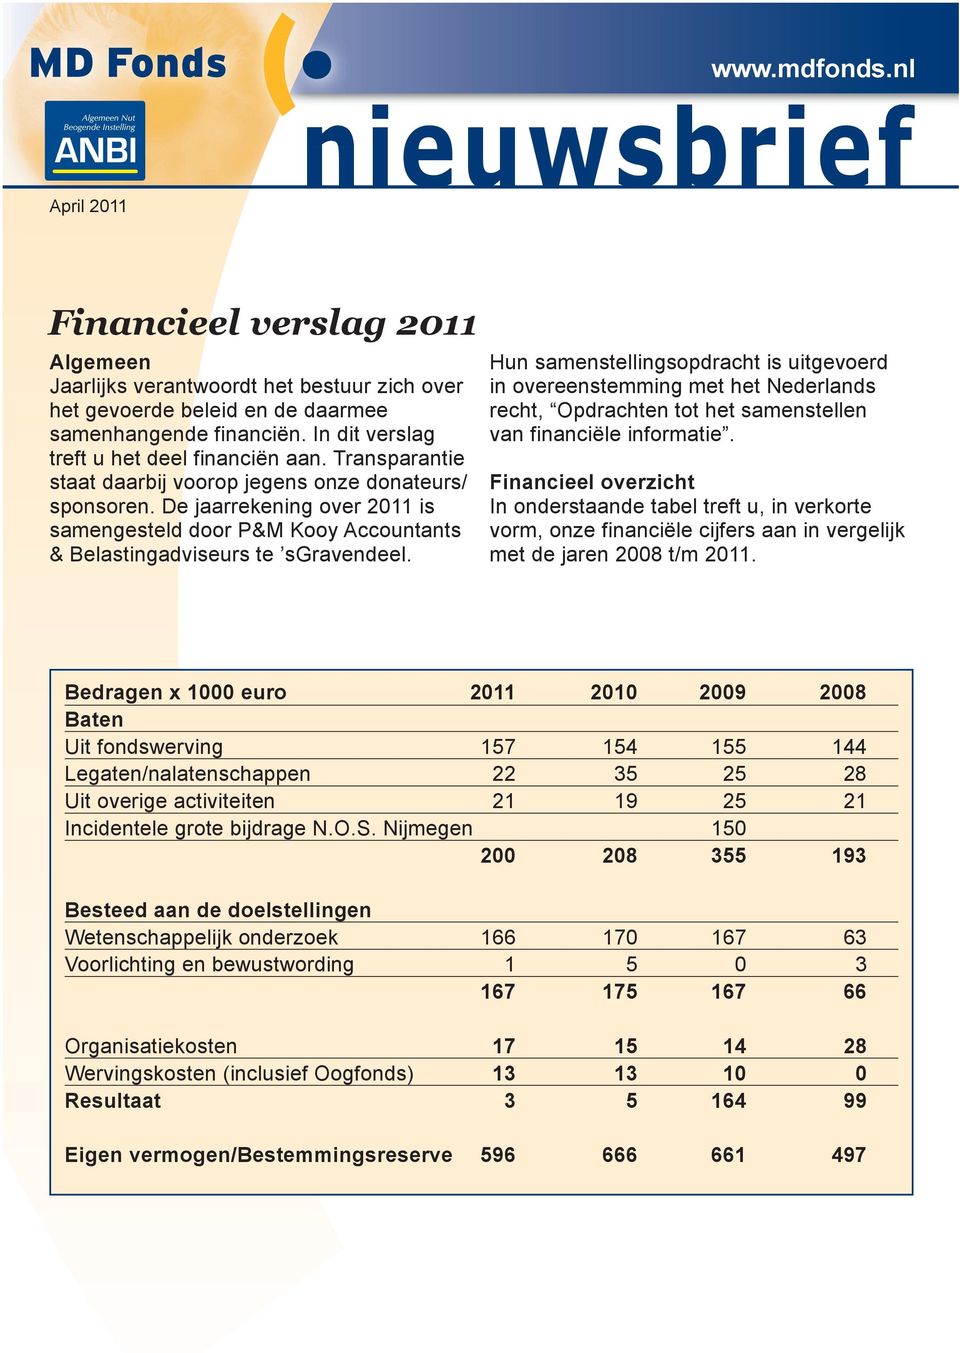 De jaarrekening over 2011 is samengesteld door P&M Kooy Accountants & Belastingadviseurs te sgravendeel.